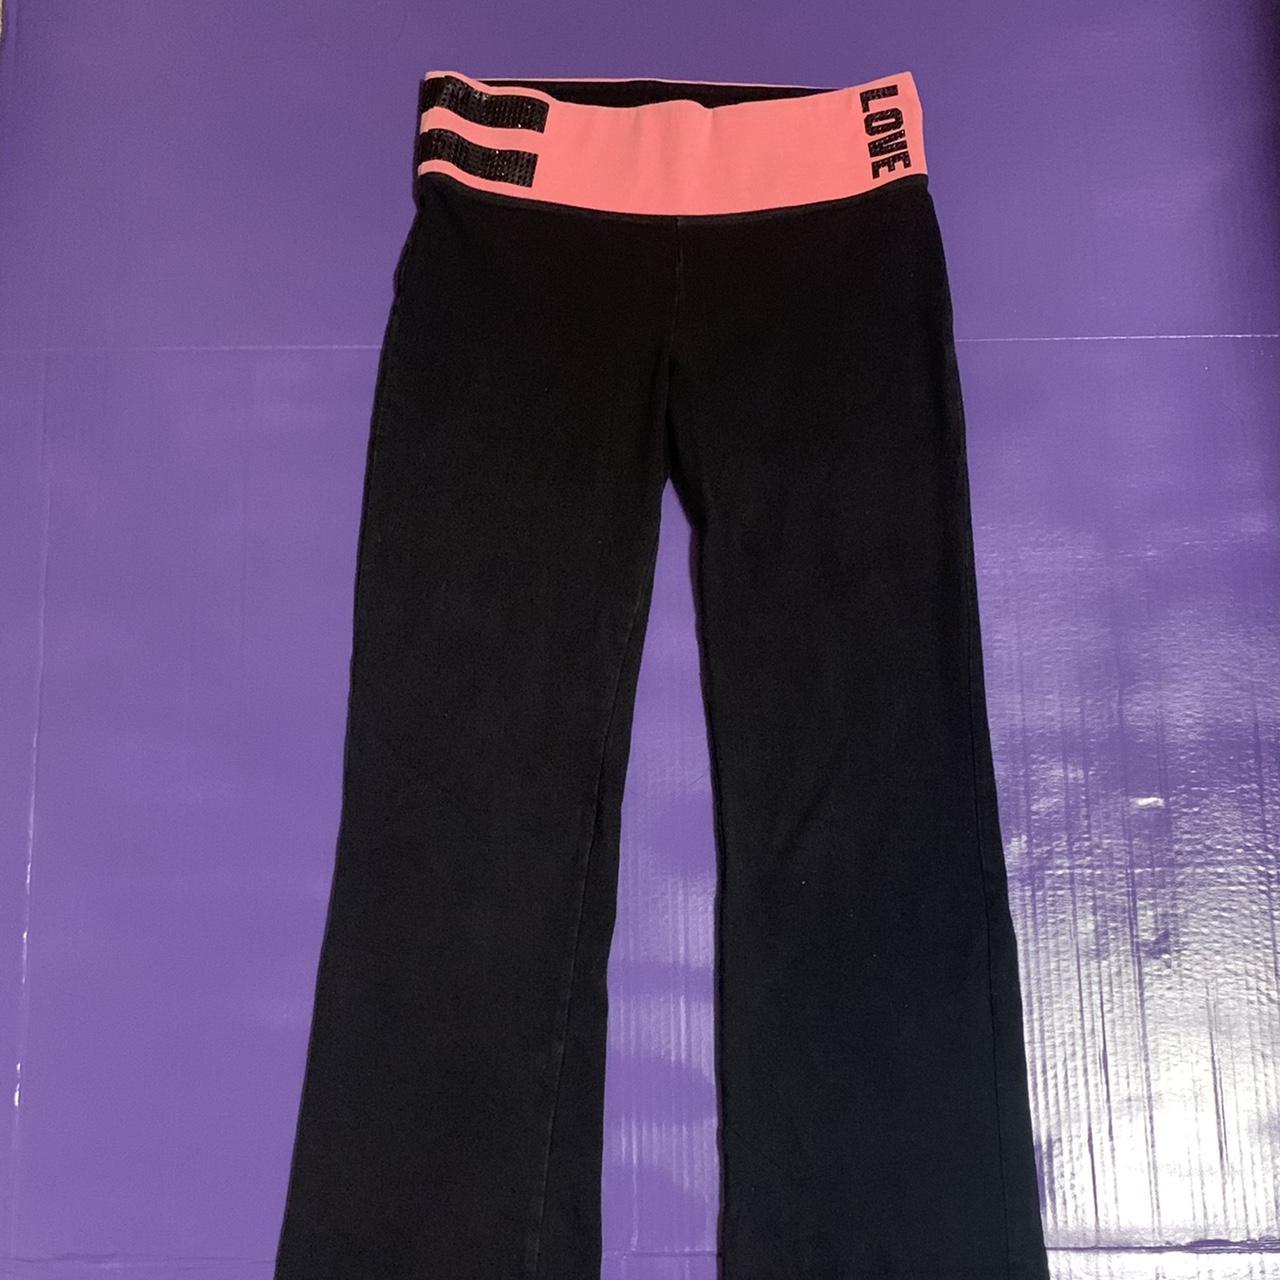 Like new black and pink yoga pants PINK brand